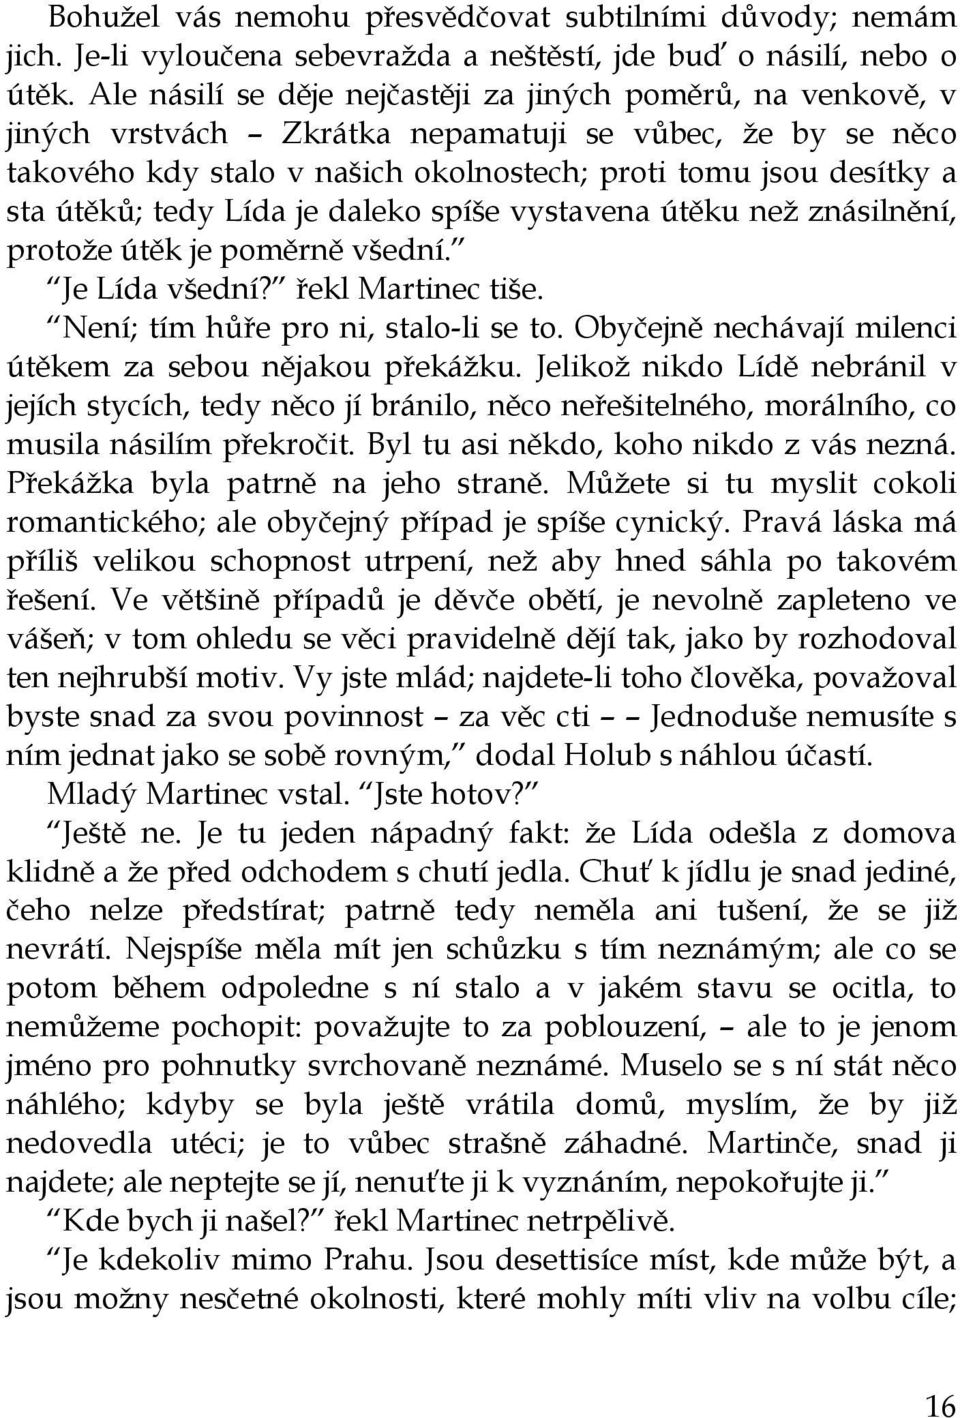 Karel Čapek BOŽÍ MUKA - PDF Free Download